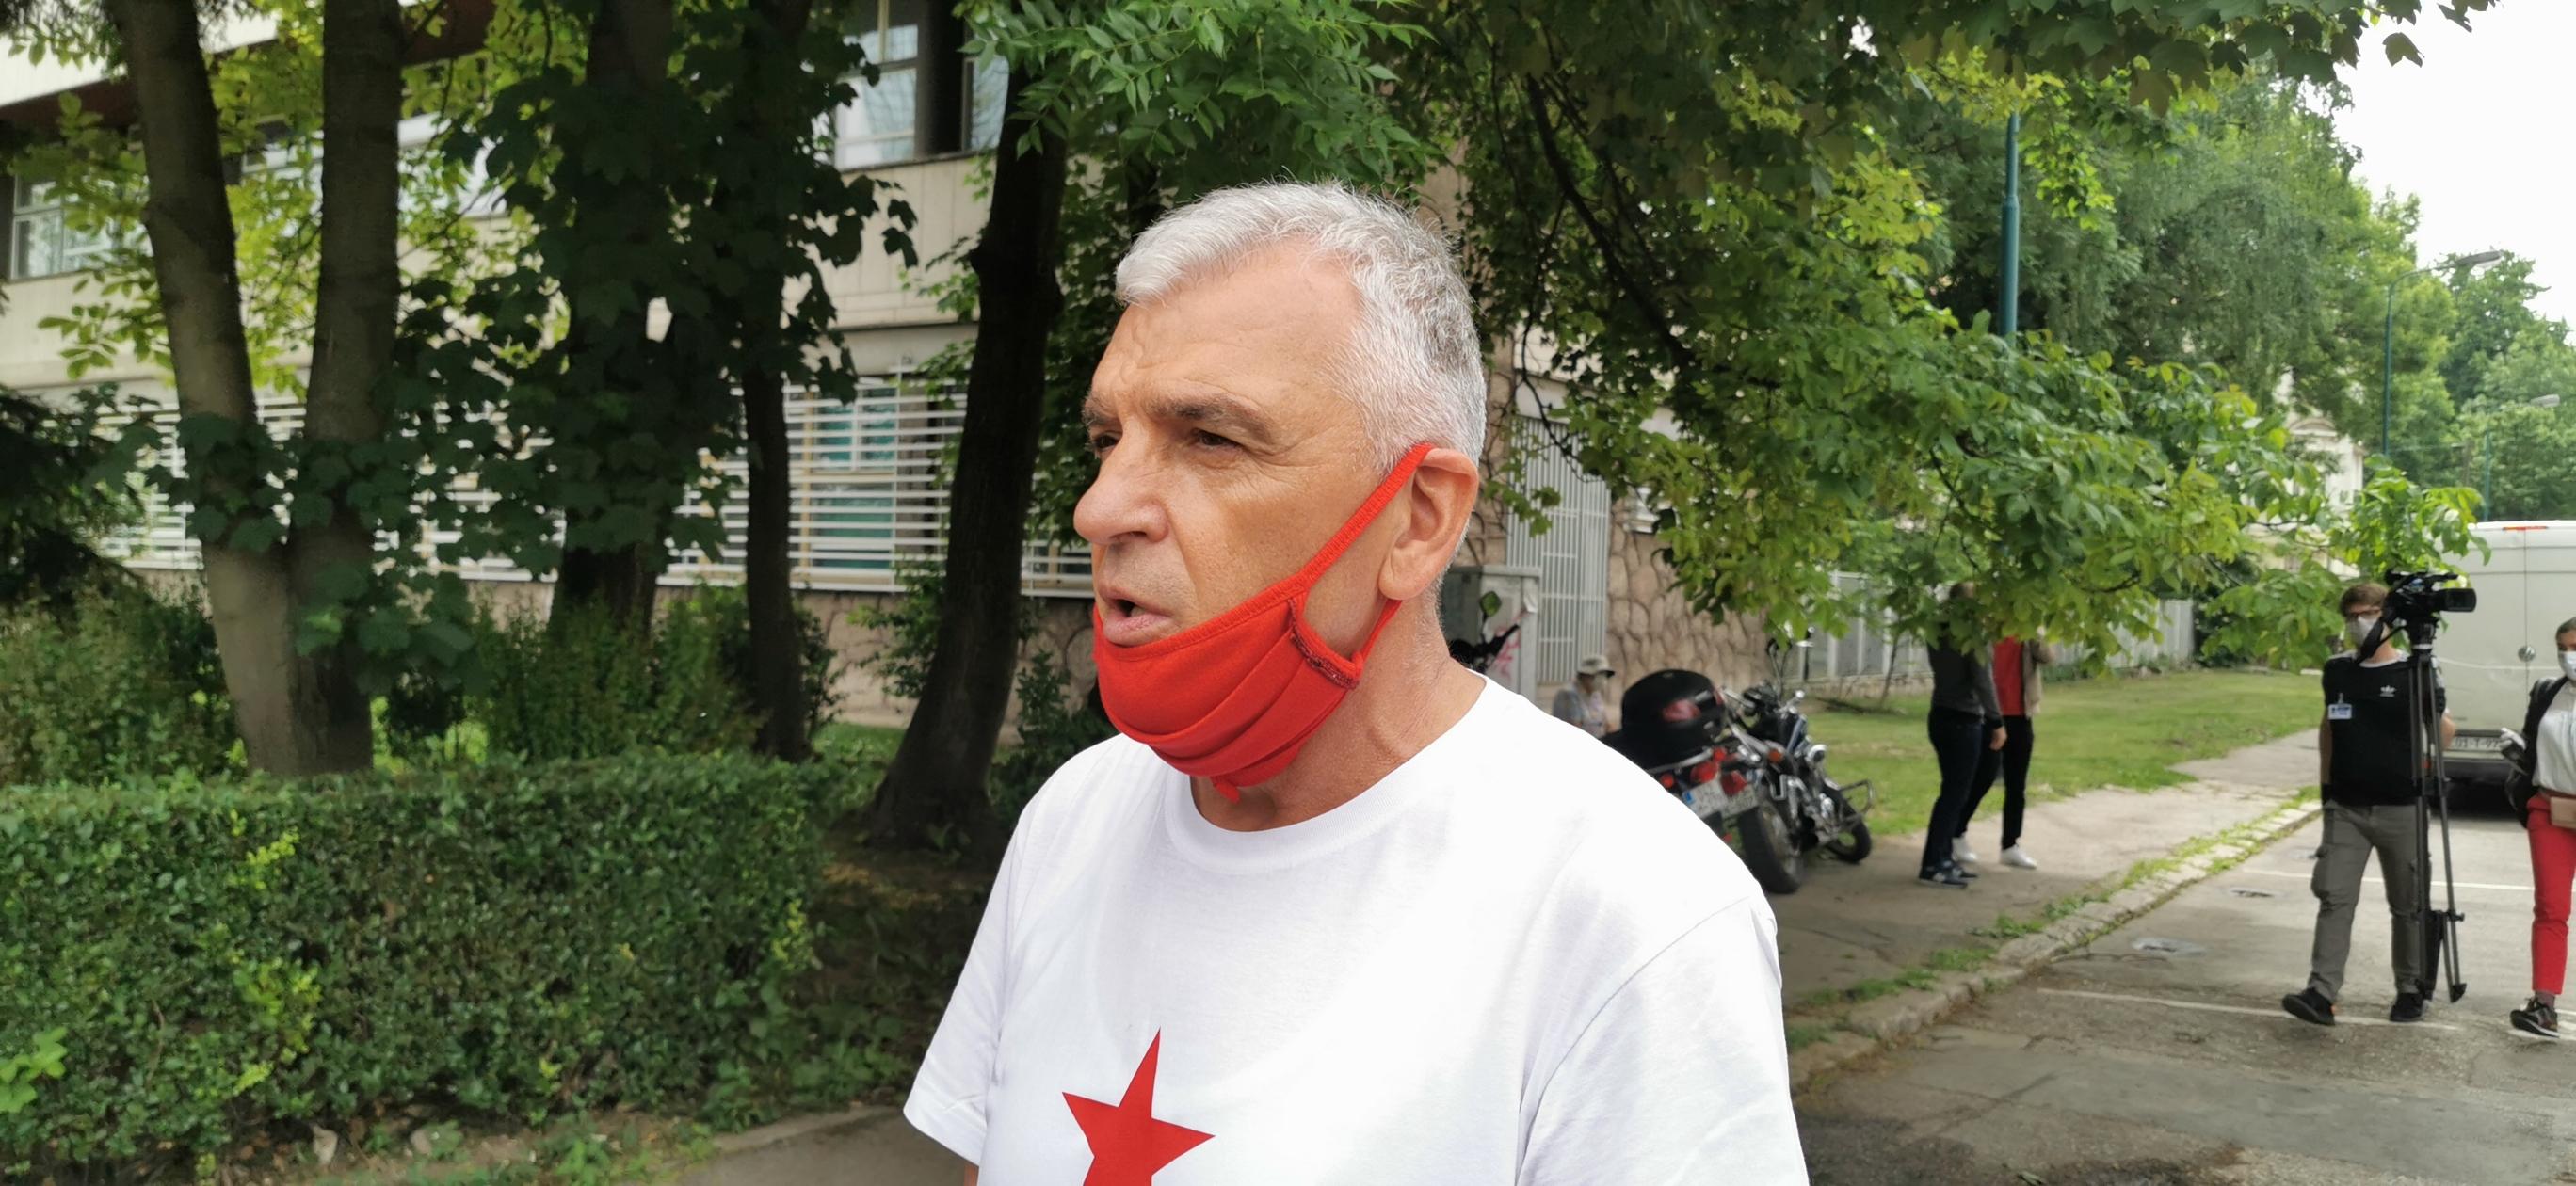 Počeo mimohod antifašista u Sarajevu - Avaz